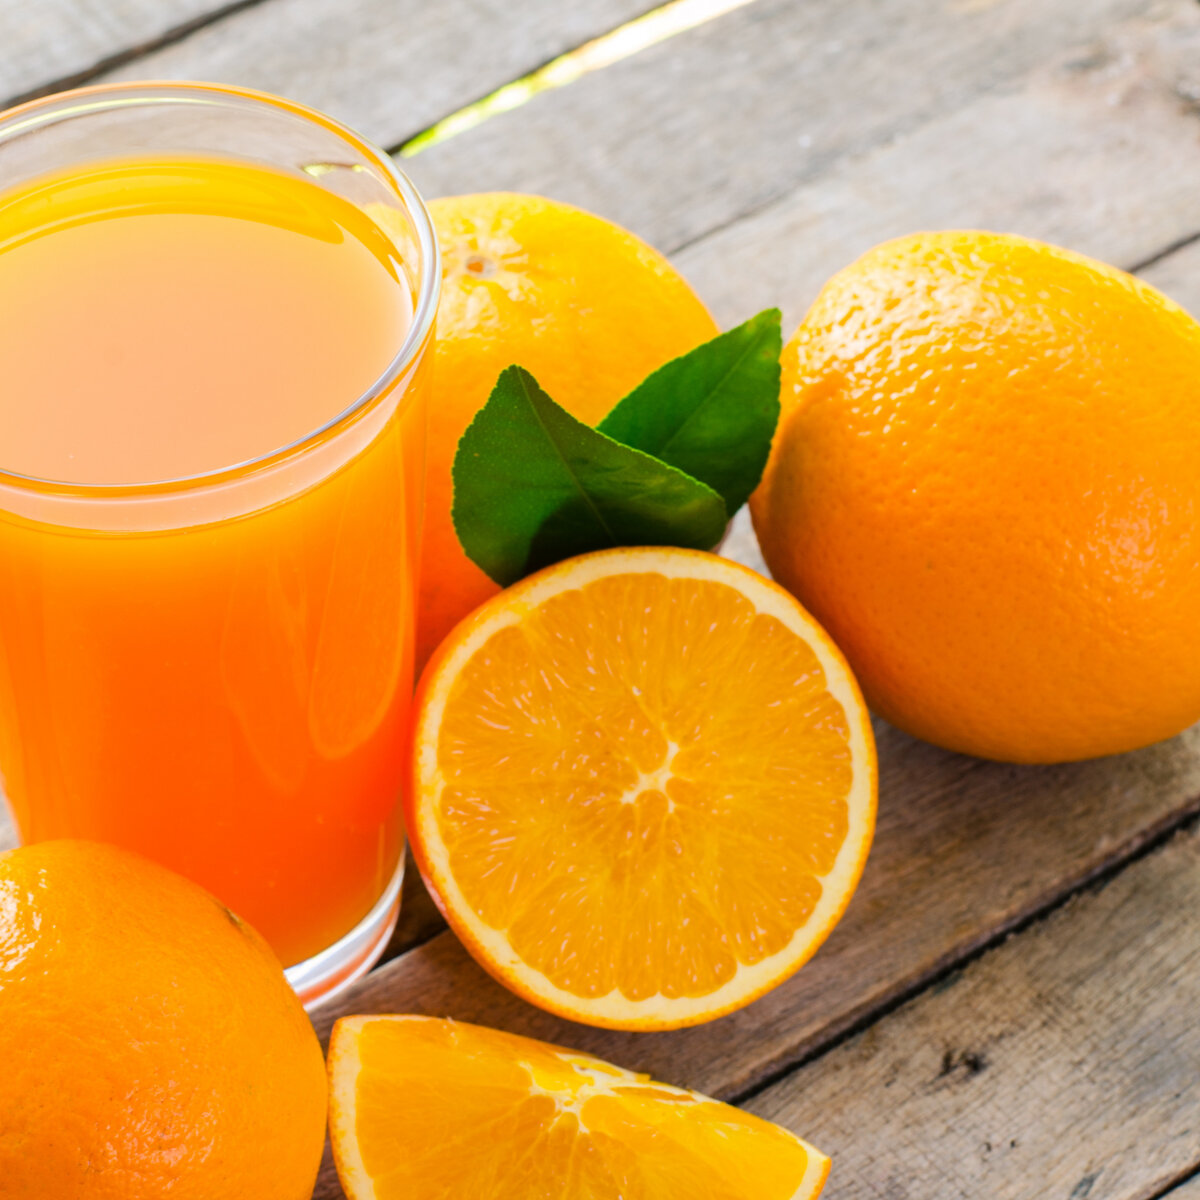 Оранж Джус. Апельсиновый сок. Апельсины для сока. Свежевыжатый сок апельсин. Виноградно апельсиновый сок